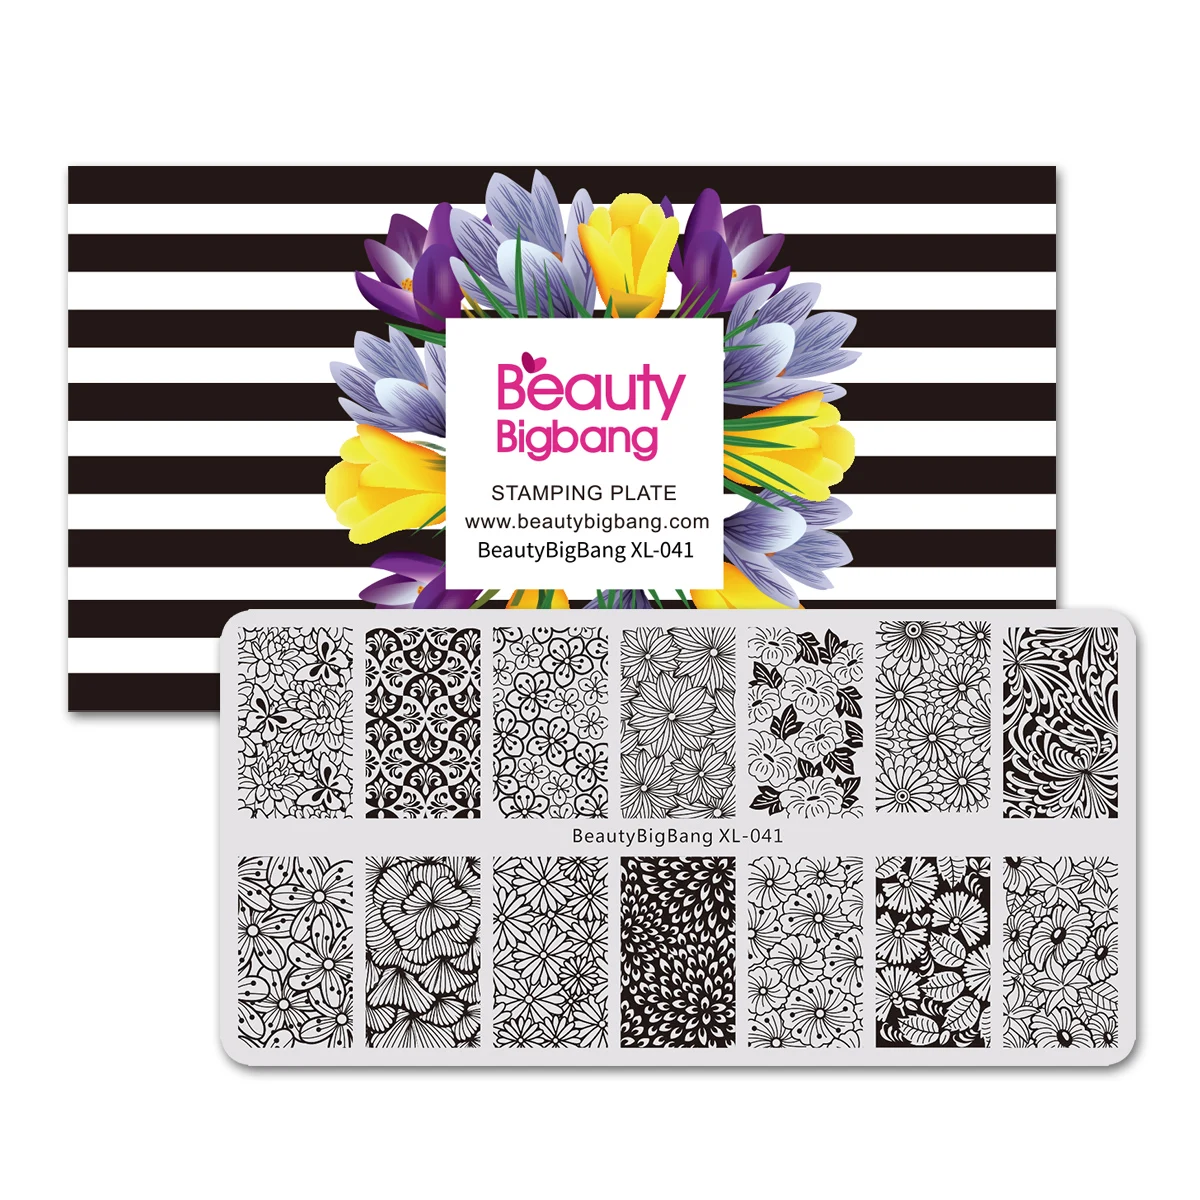 BeautyBigBang трафарет для штамповки пластин для дизайна ногтей цветочный лист изображения осенняя Тема 6*12 см штамп для дизайна ногтей шаблоны BBB XL-021 - Цвет: 41